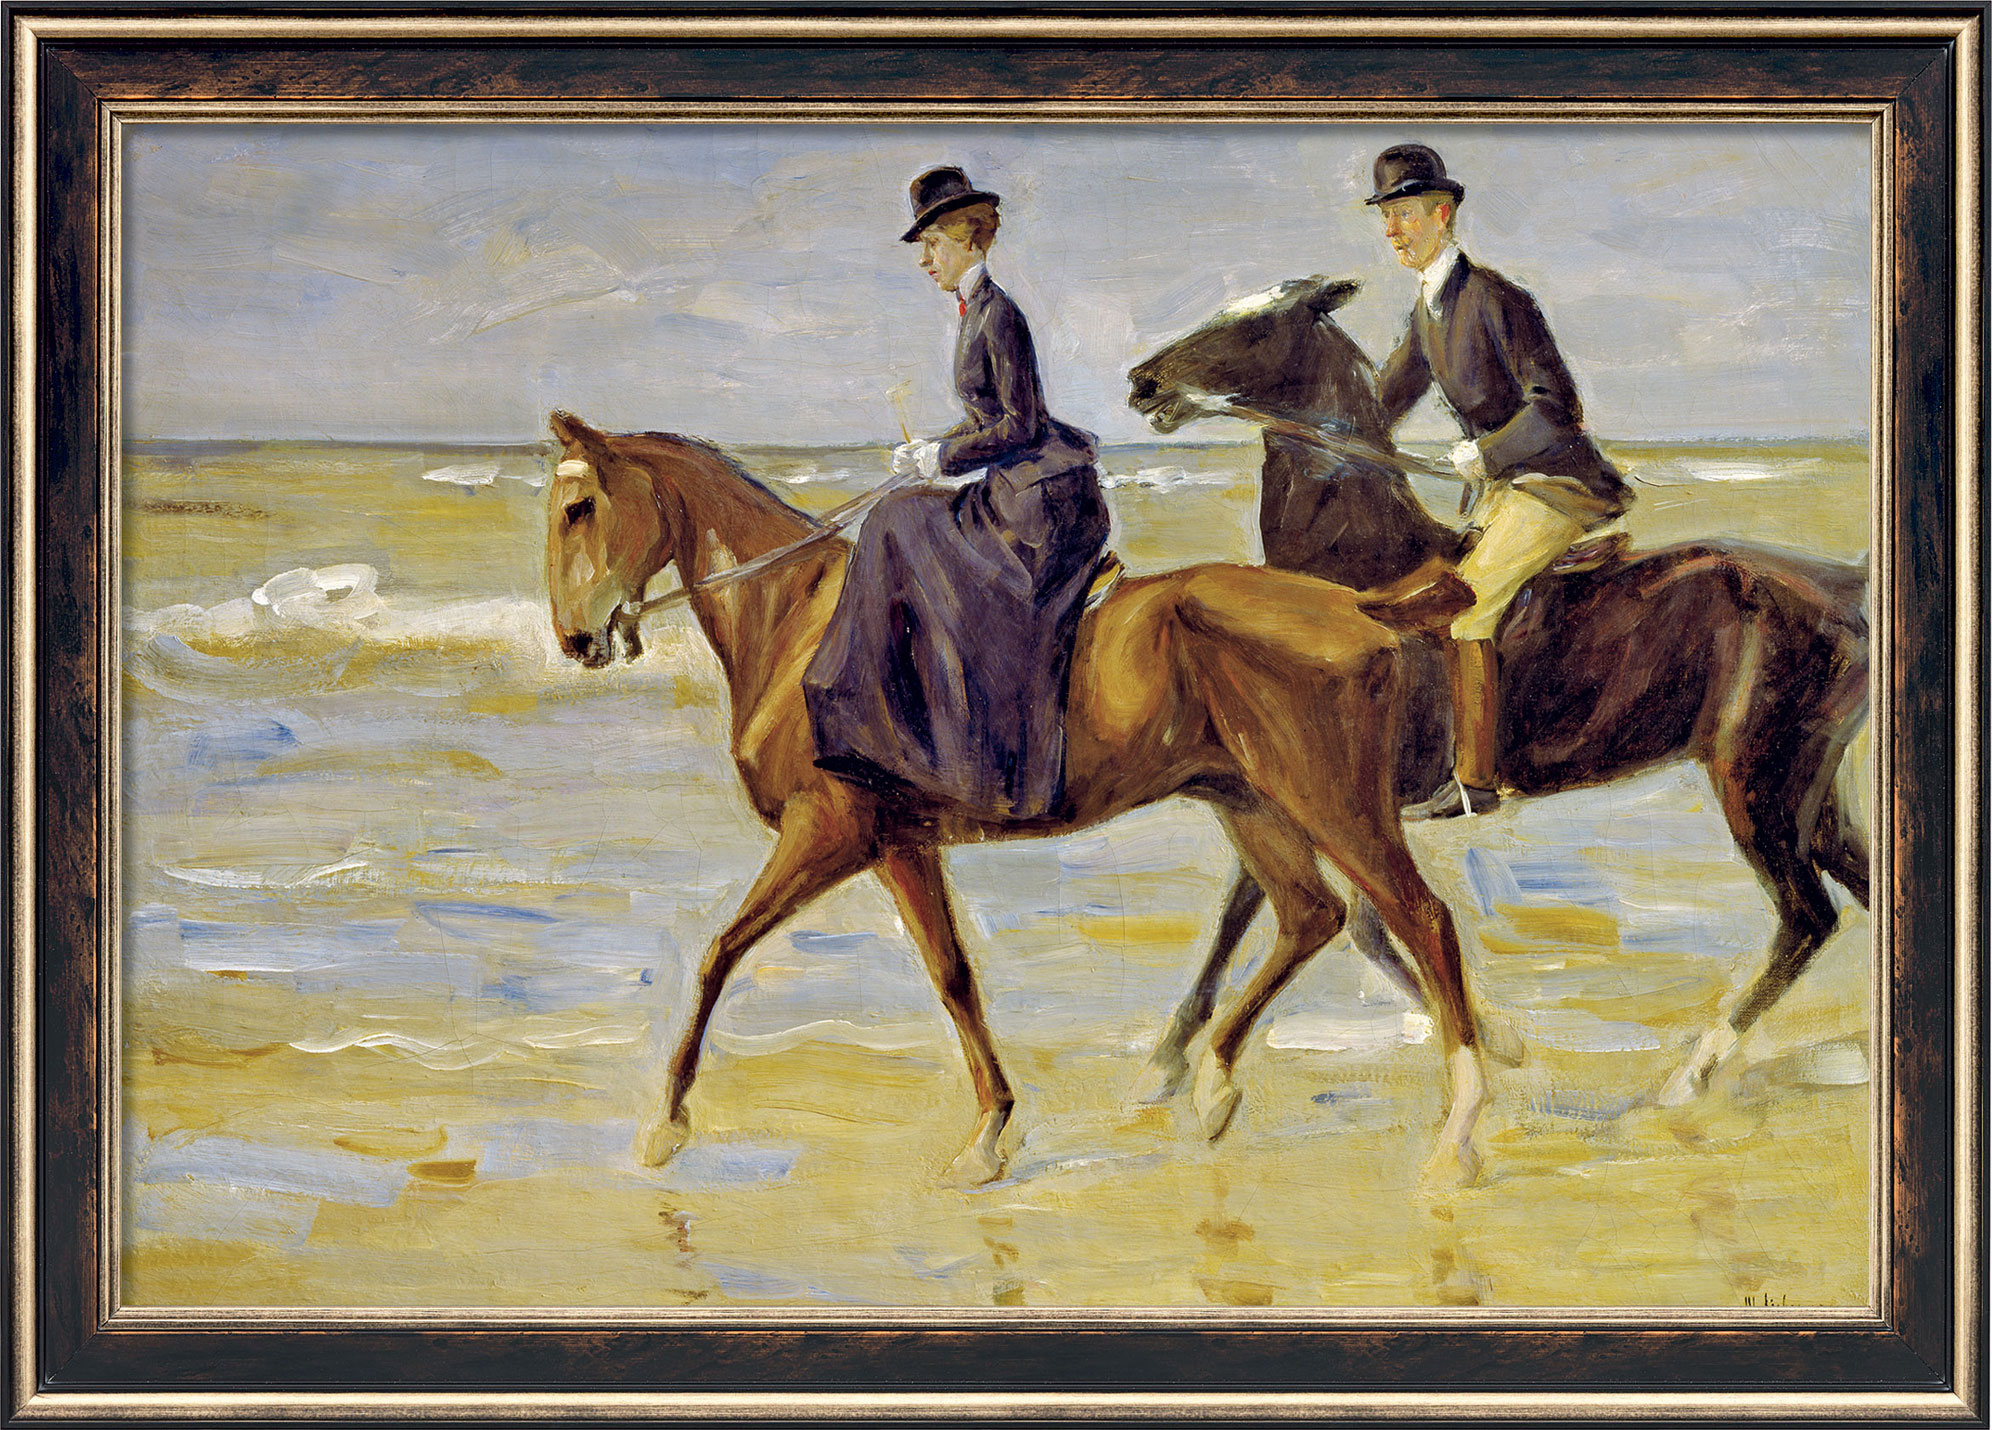 Max Liebermann: Bild 'Reiter und Reiterin am Strand' (1903), gerahmt